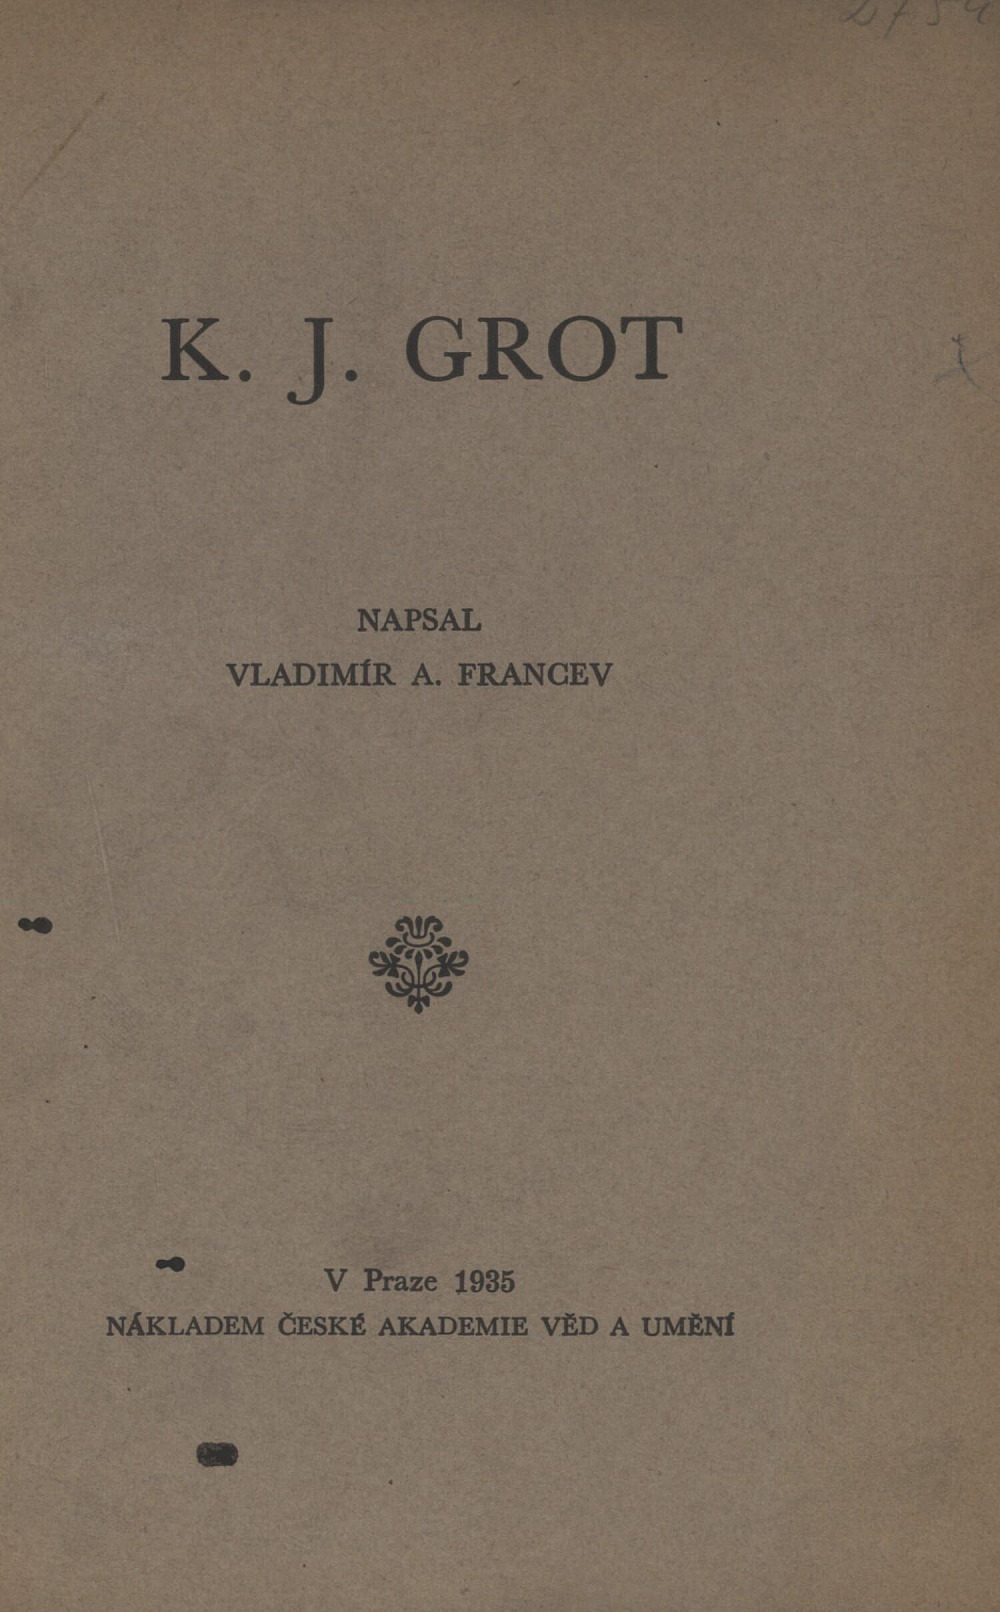 K. J. Grot